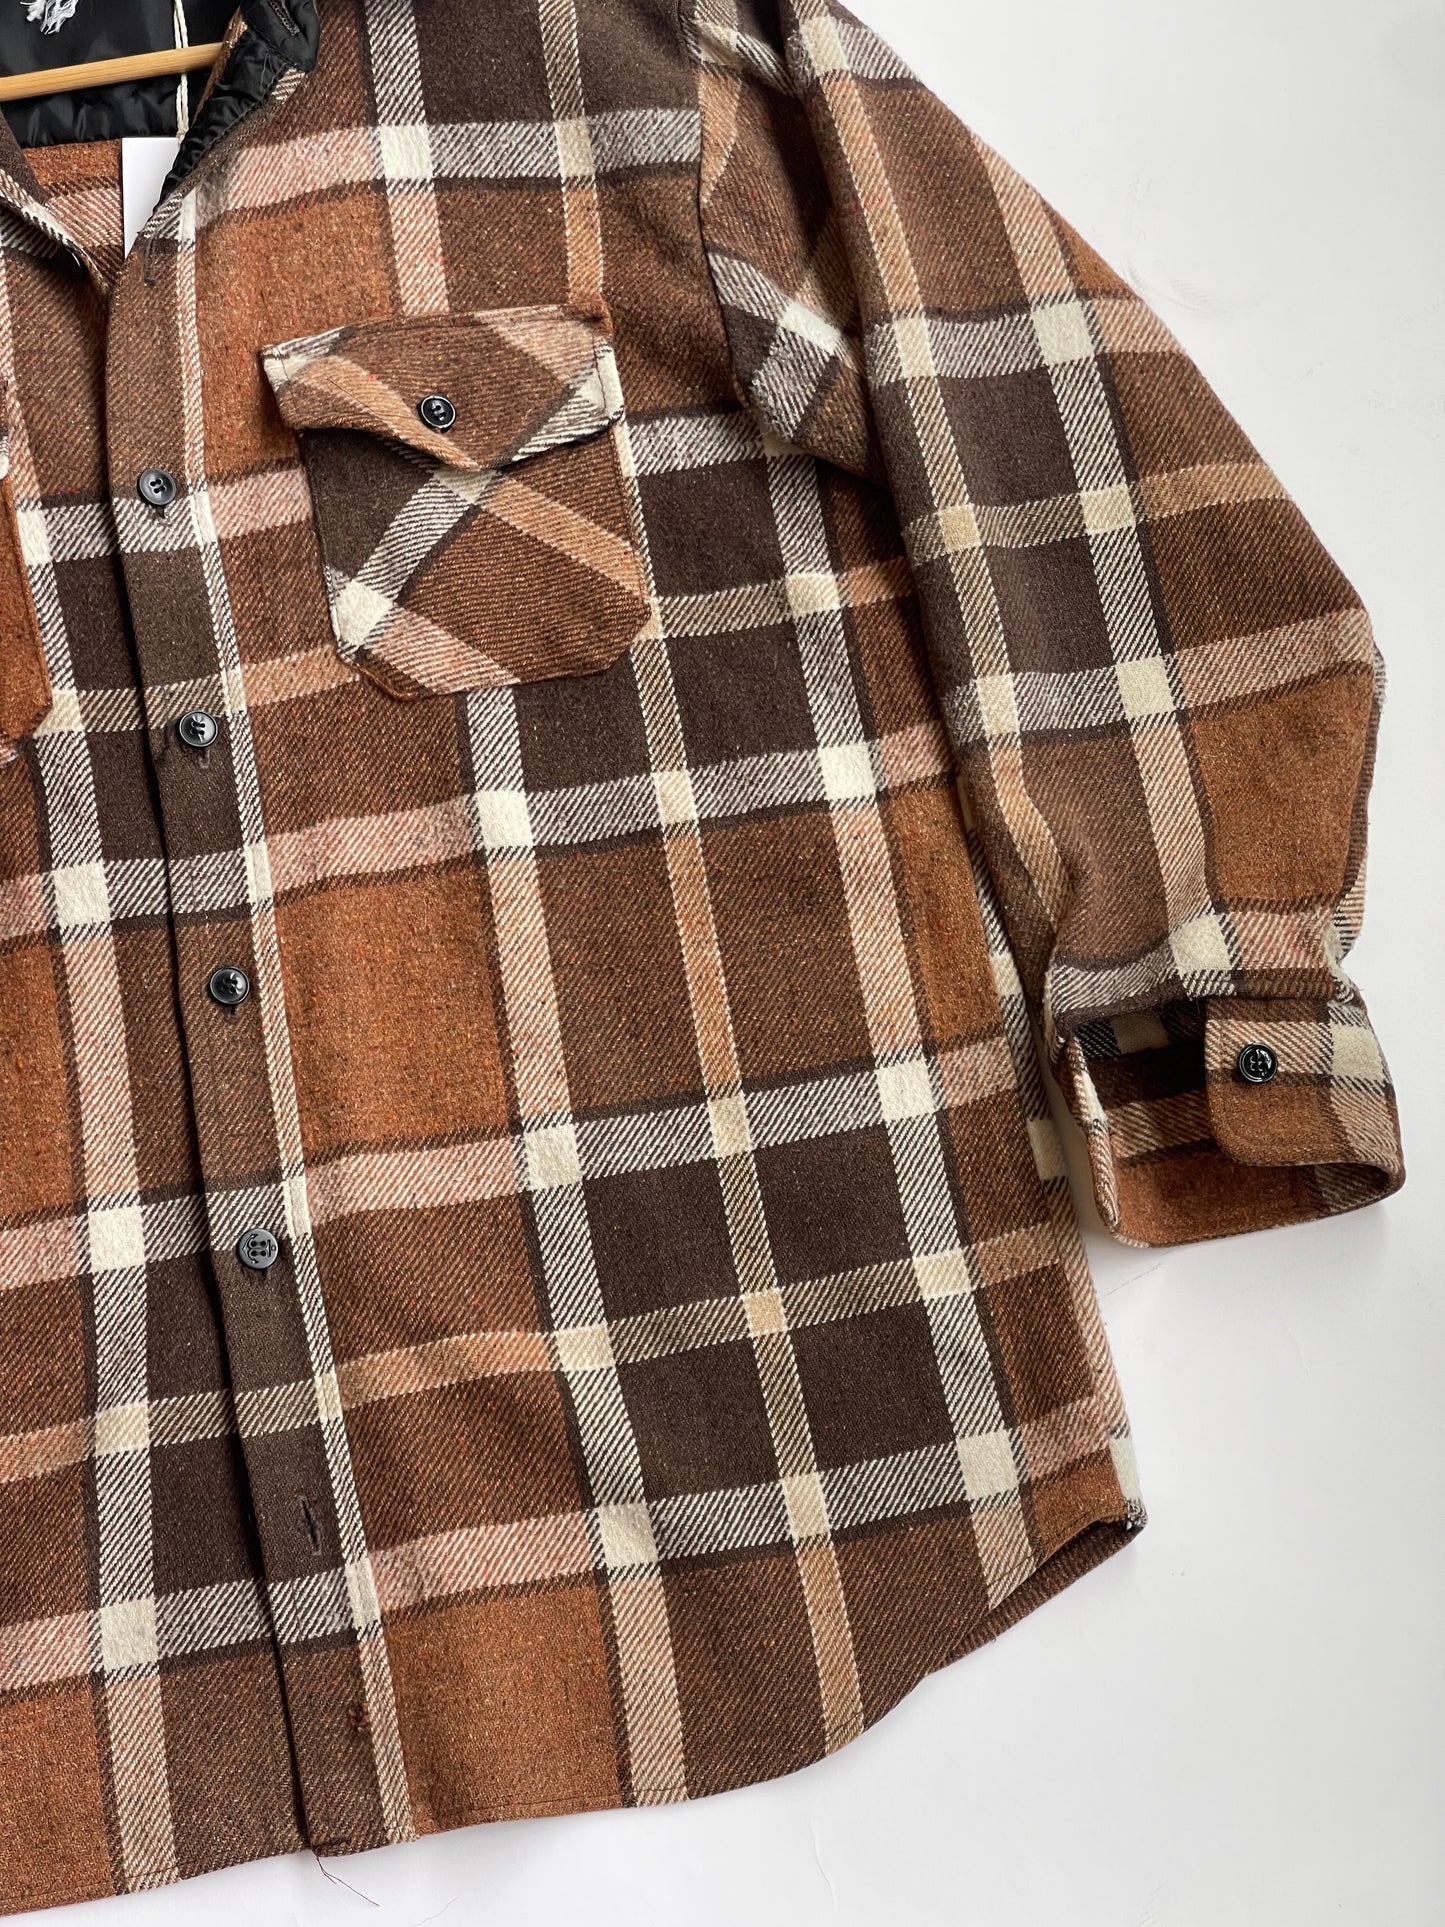 Vintage Brown Plaid Flannel Camp Shirt - L